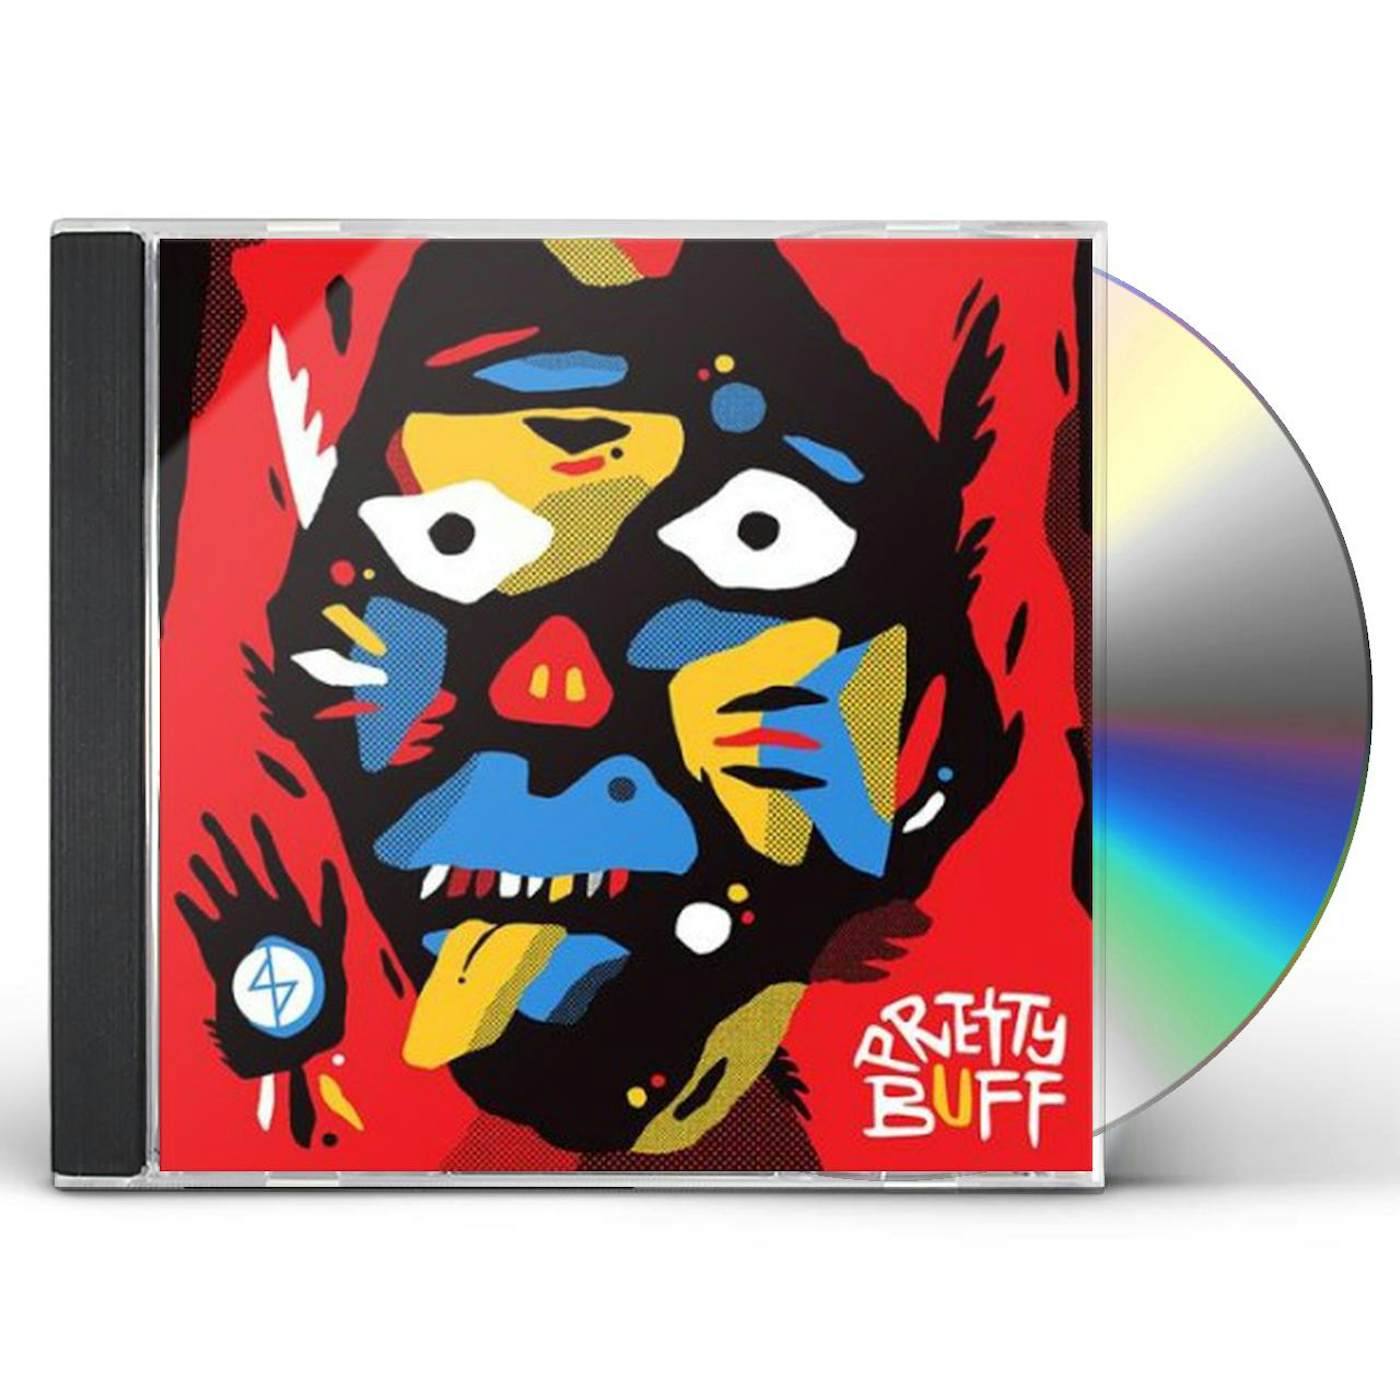 Angel Dust PRETTY BUFF CD